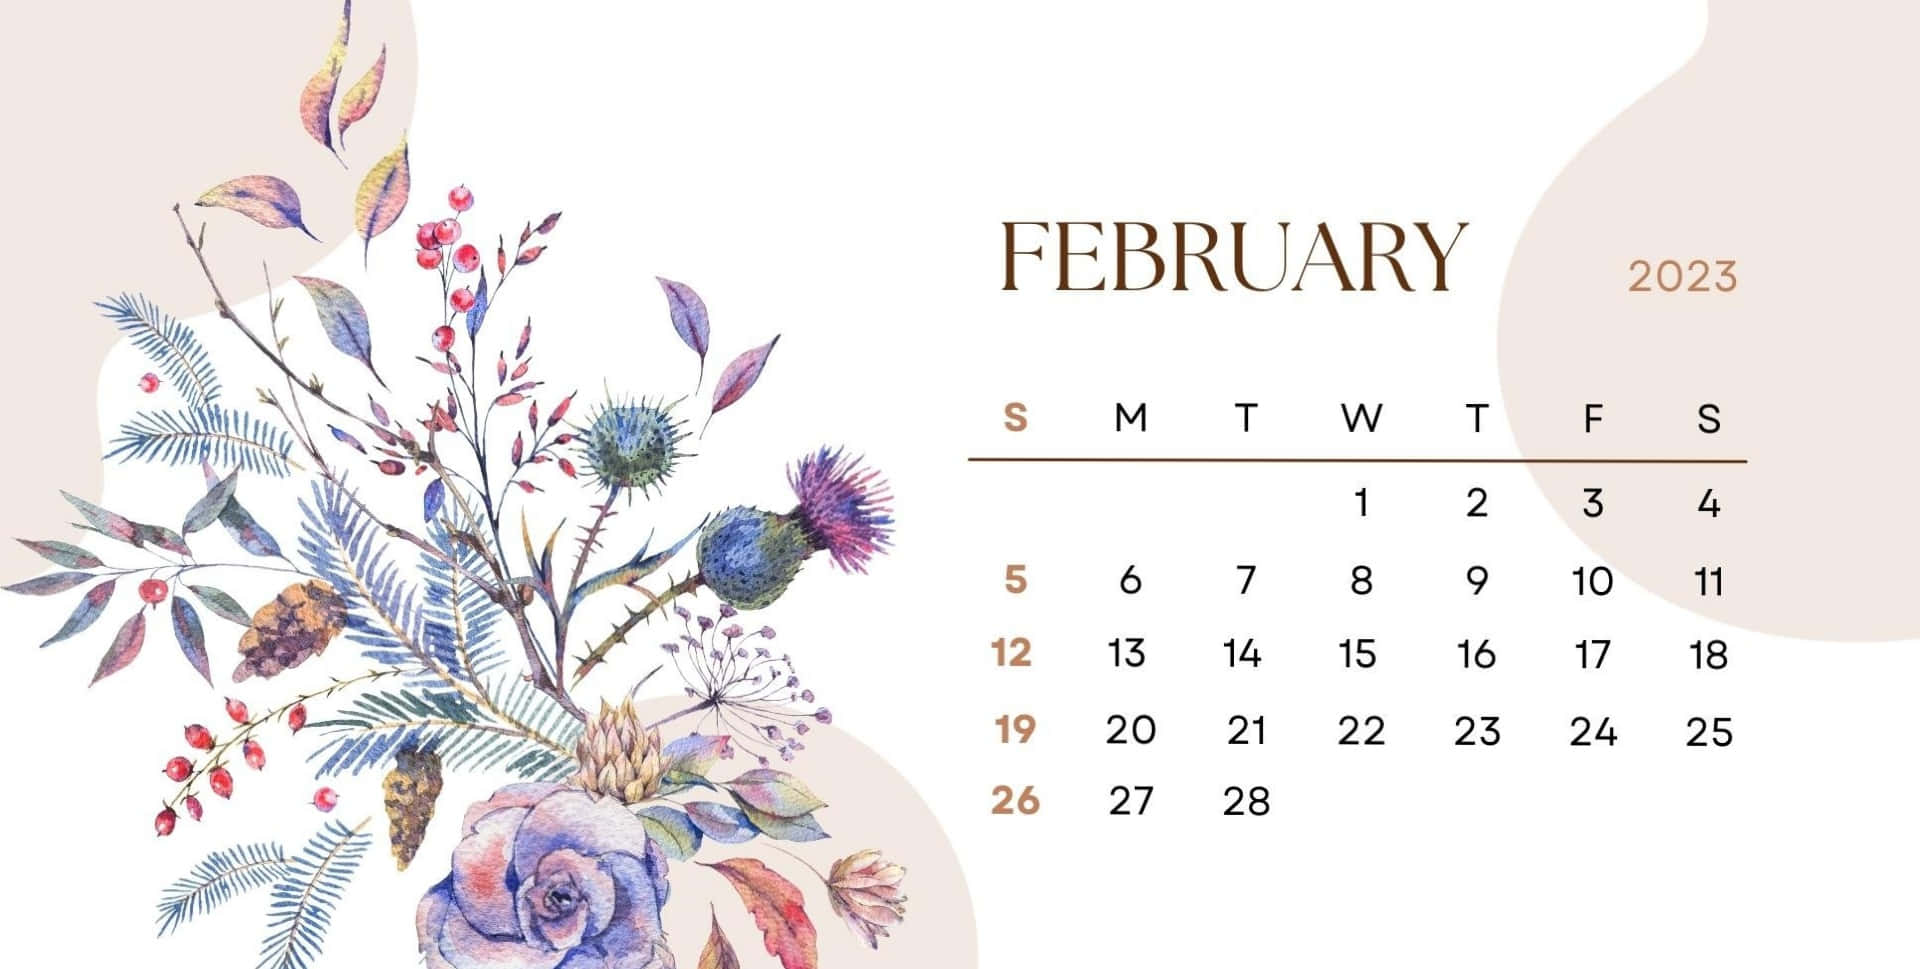 Free February Calendar Wallpaper Downloads, [100+] February Calendar  Wallpapers for FREE 